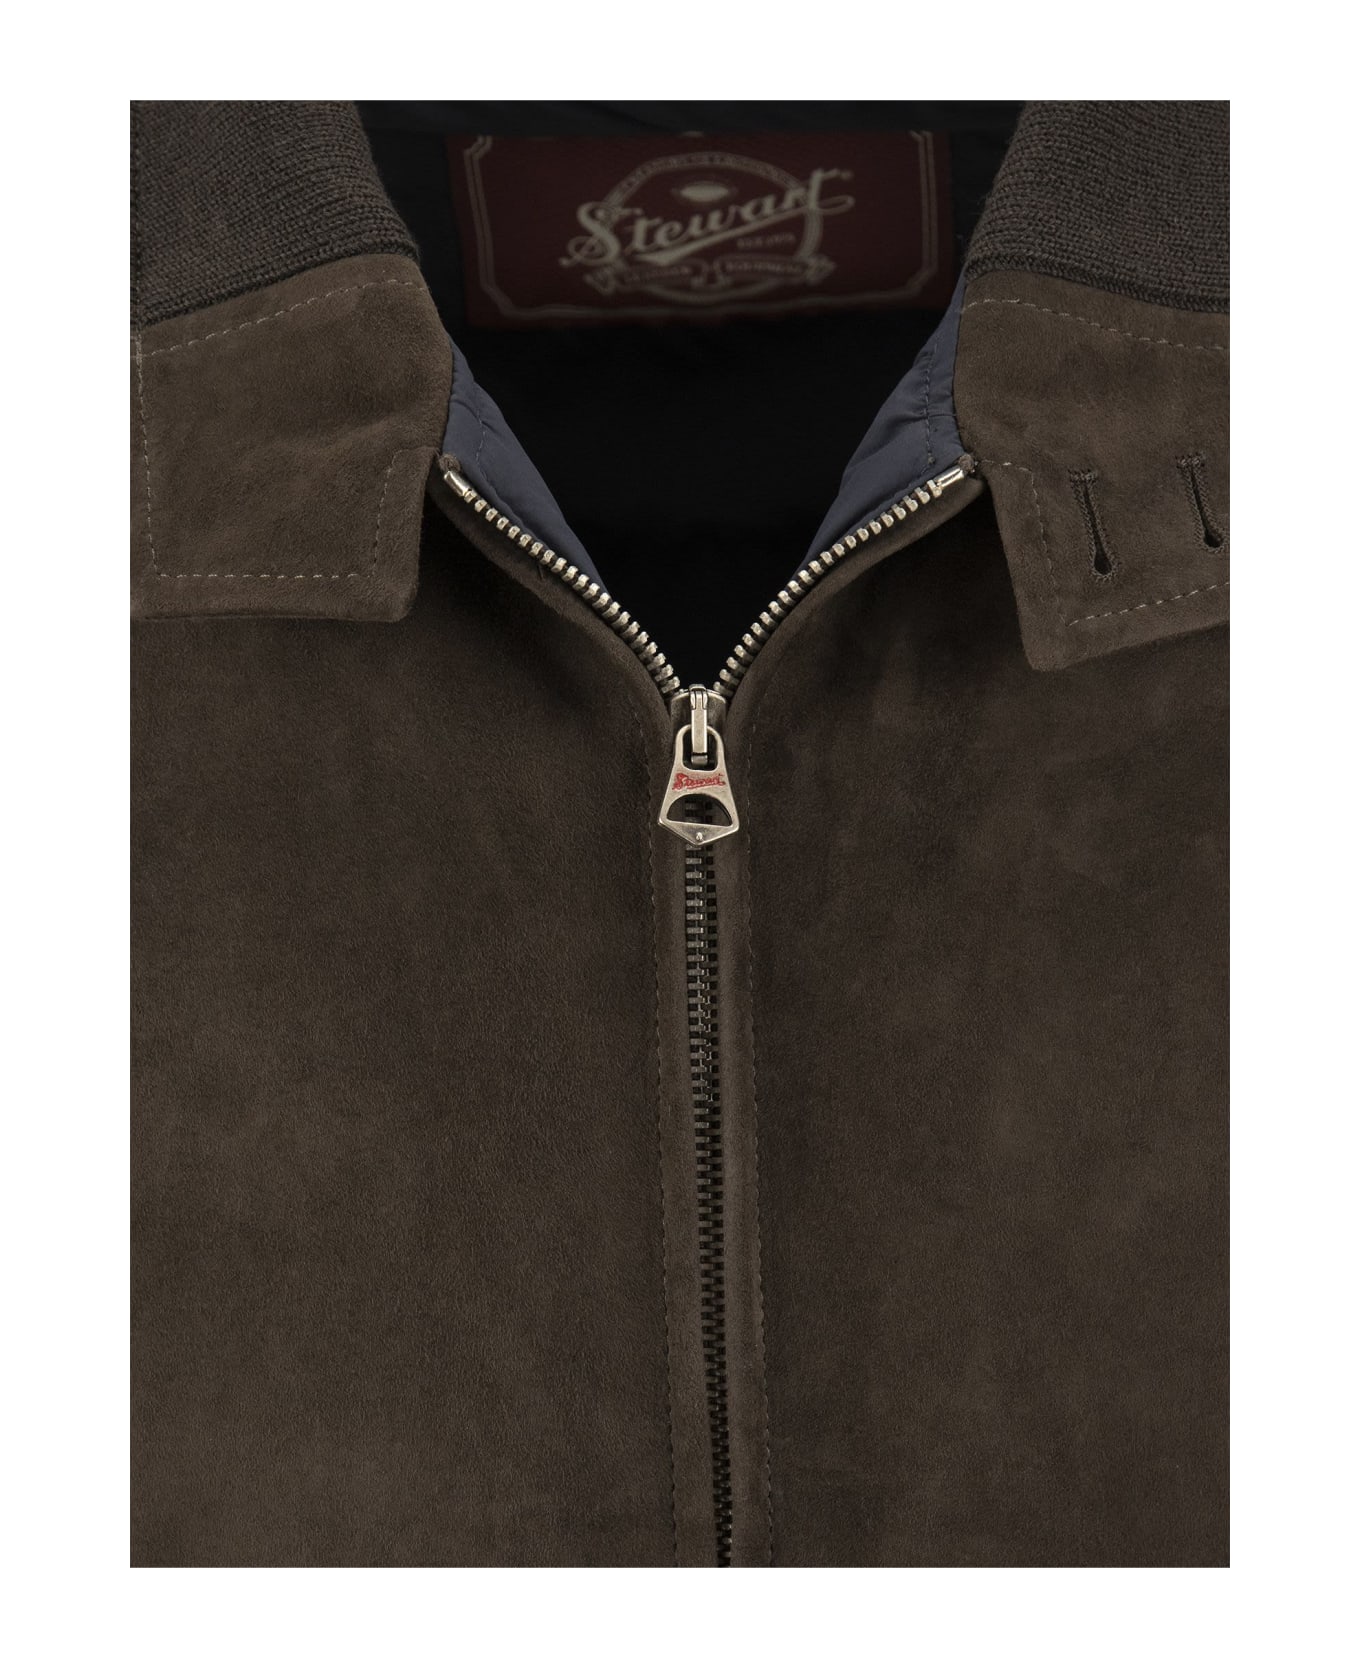 Stewart Suede Leather Jacket - Brown ジャケット